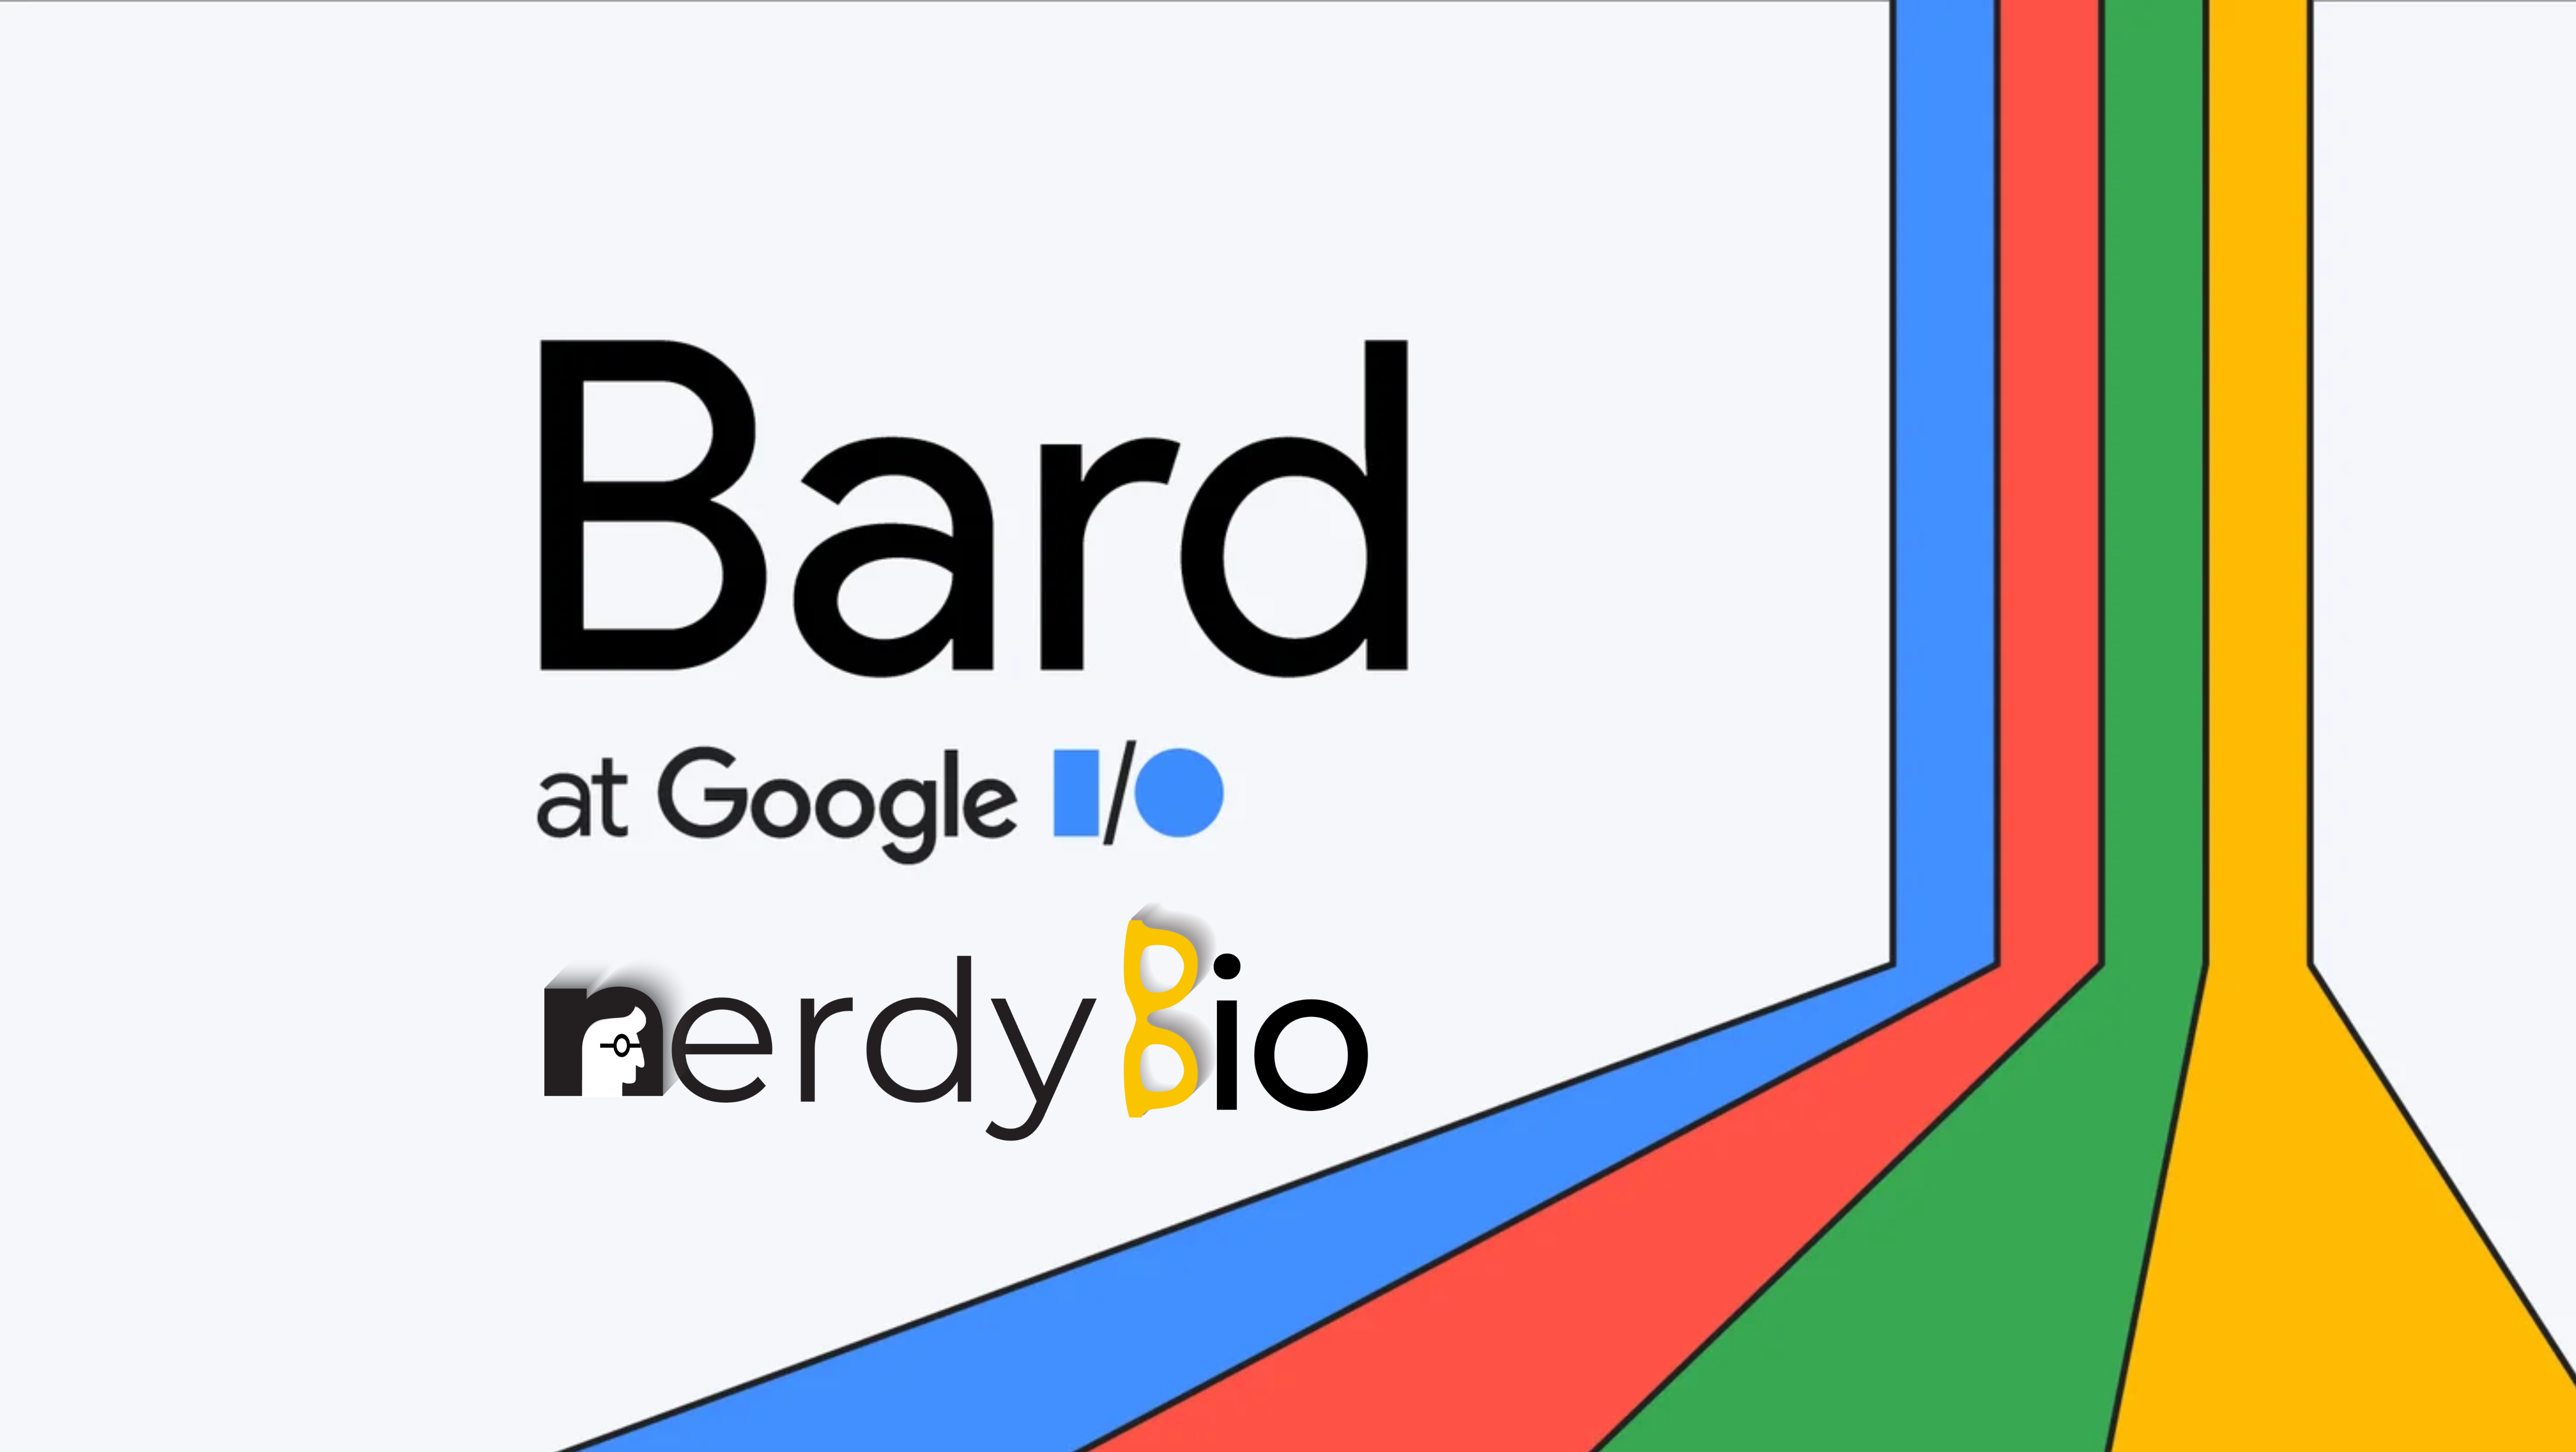 Bard nerdybio: The Nerd Community